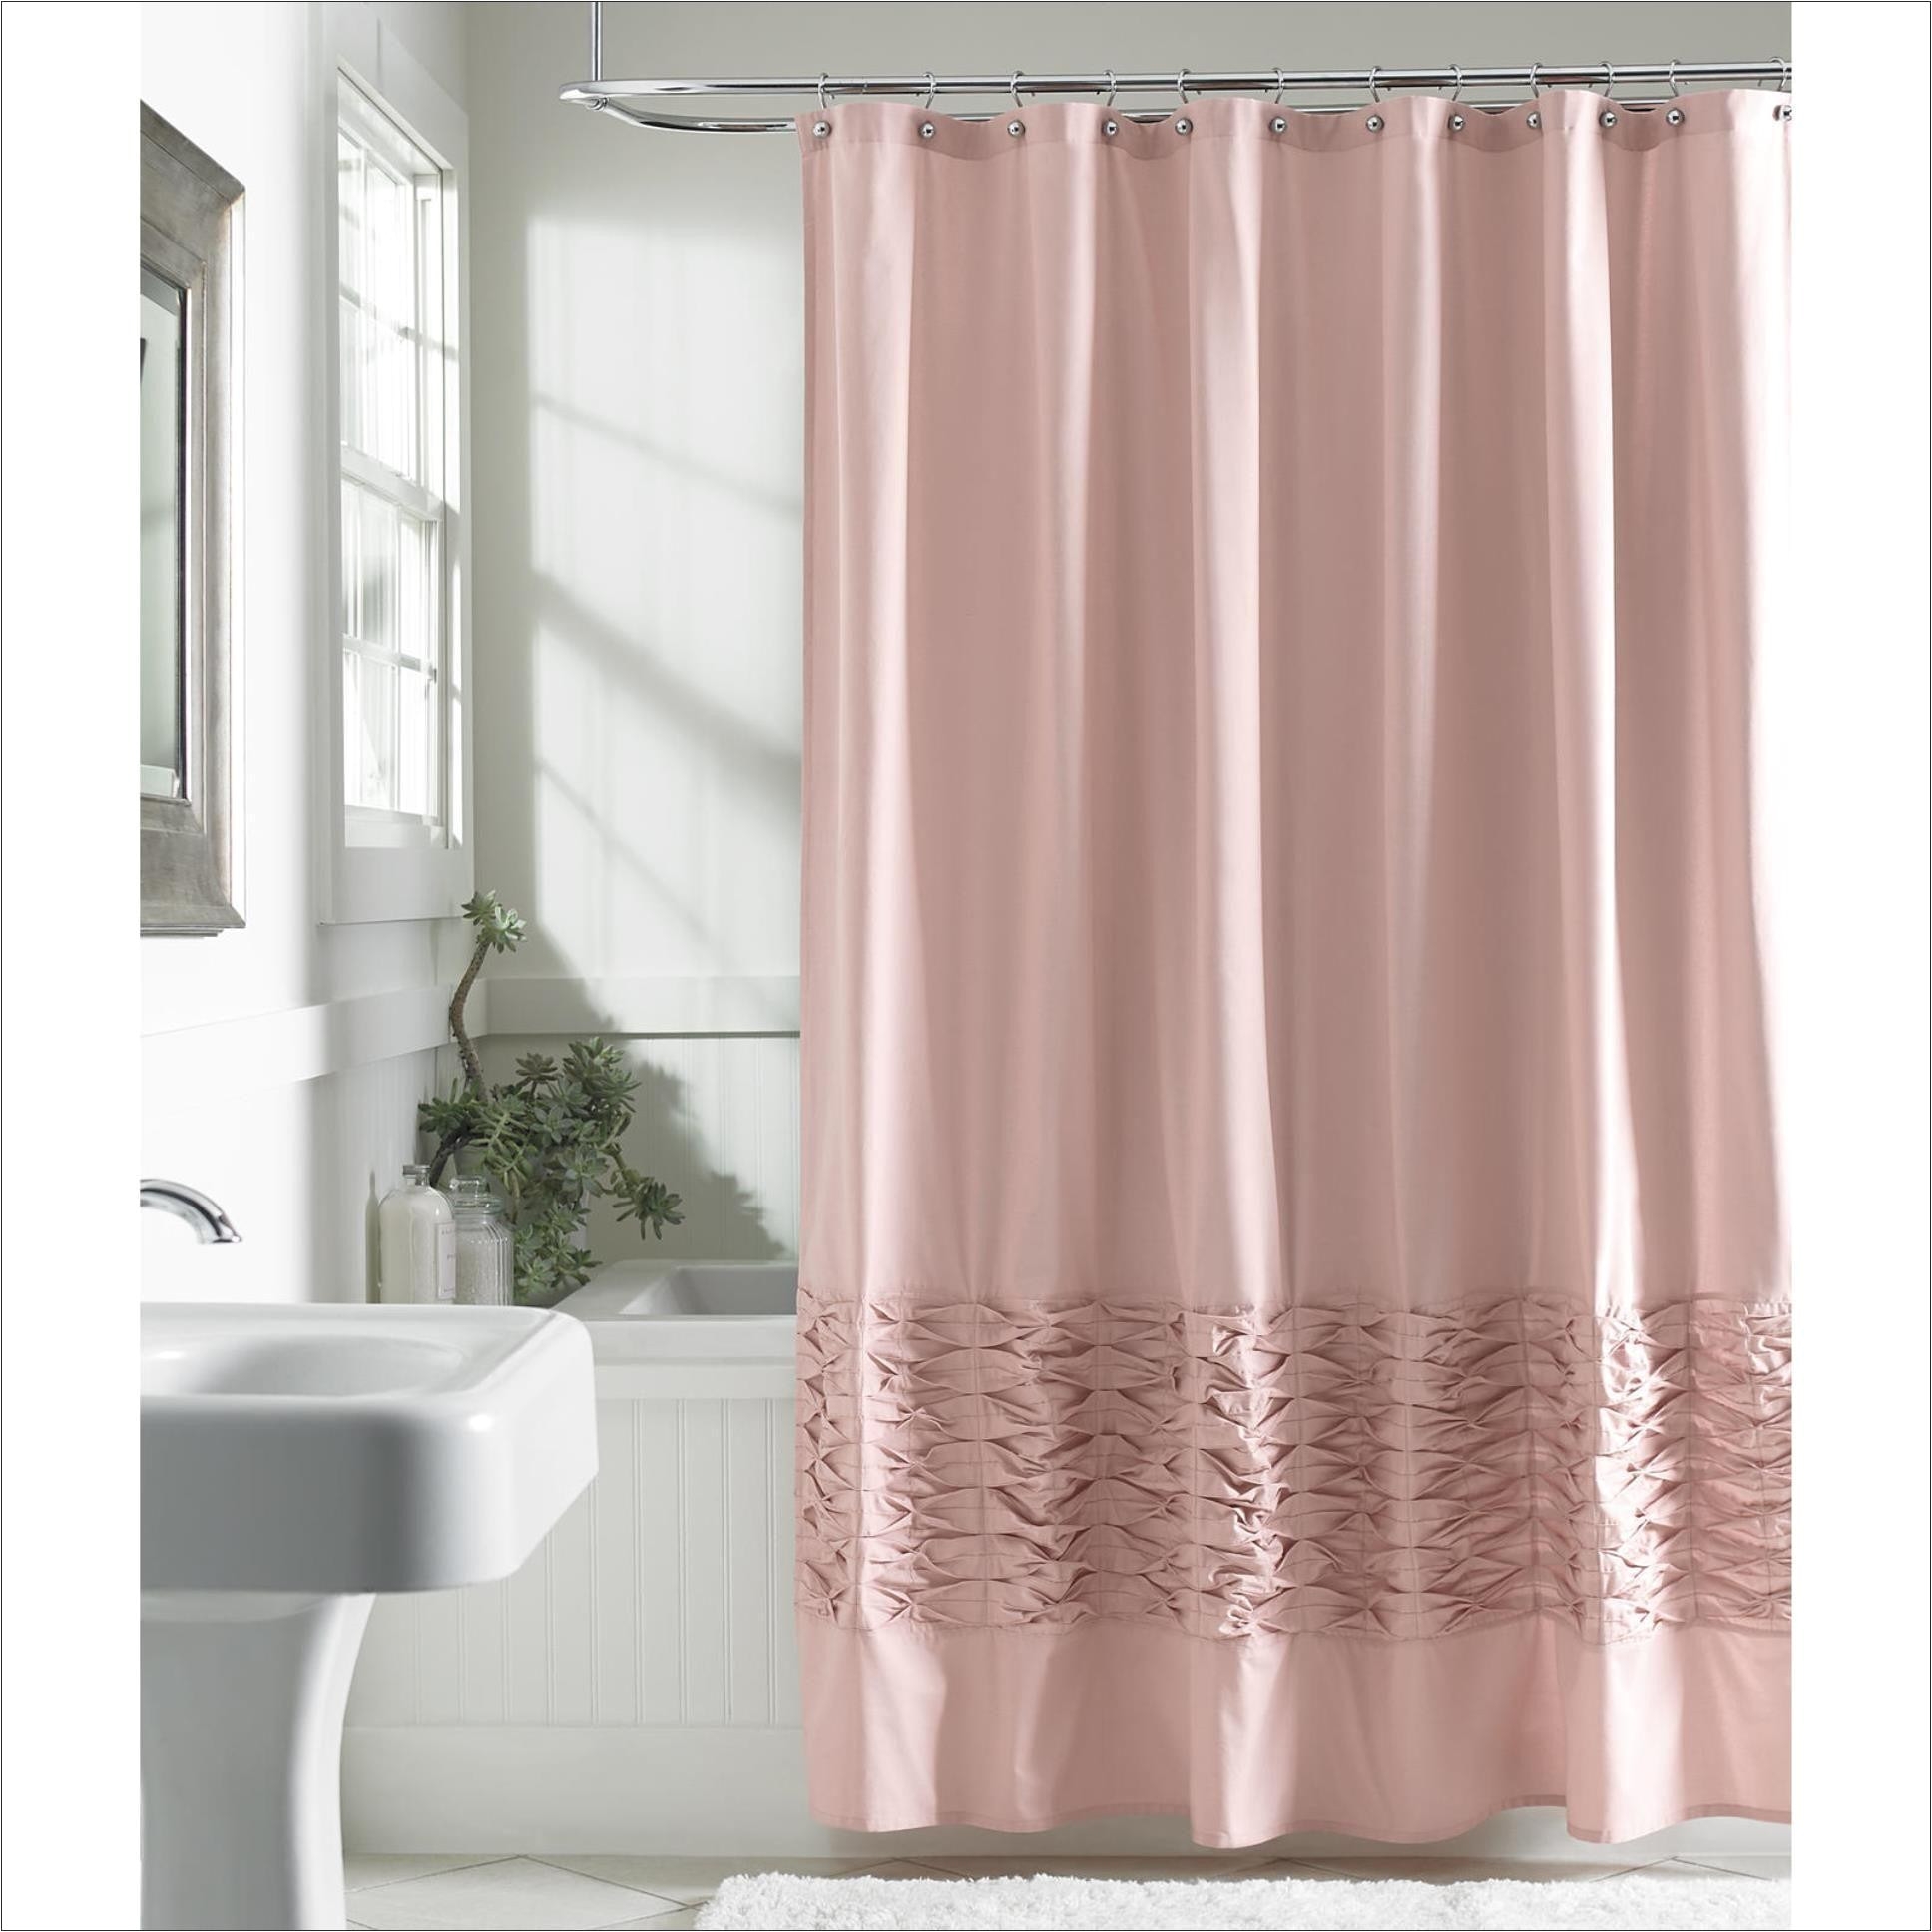 26 luxury brown and beige shower curtain scheme shower curtains